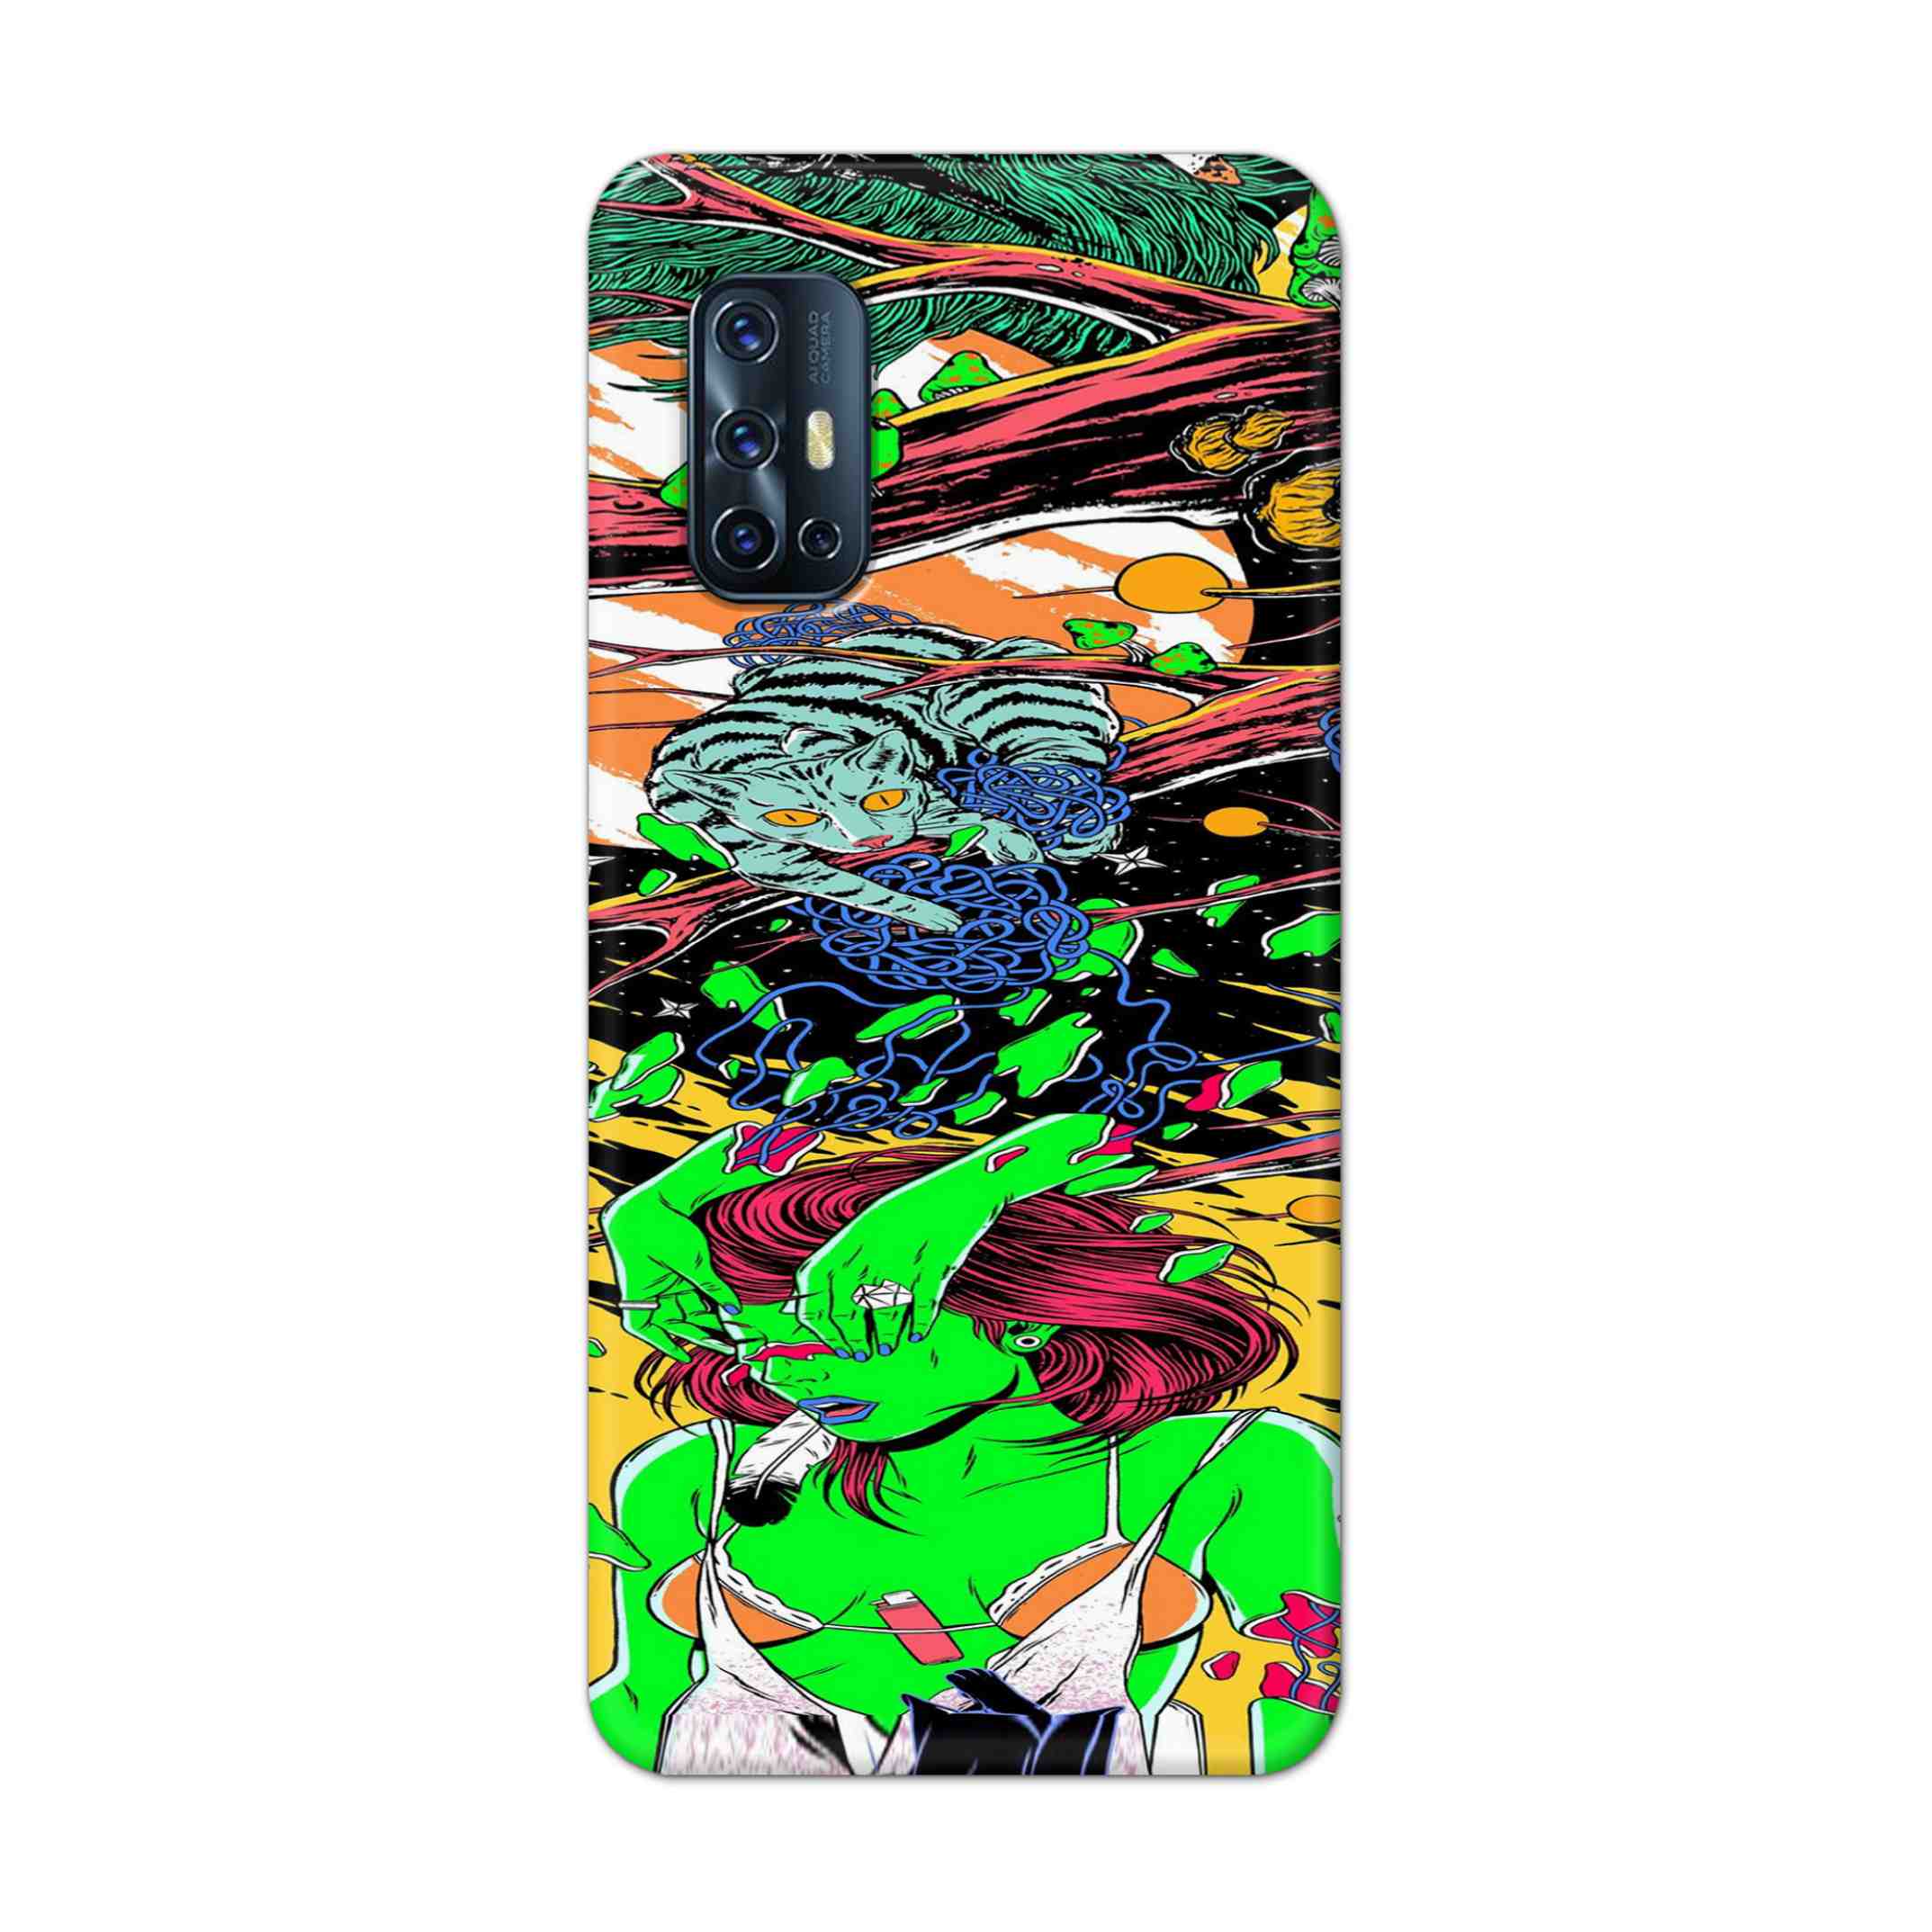 Buy Green Girl Art Hard Back Mobile Phone Case Cover For Vivo V17 Online